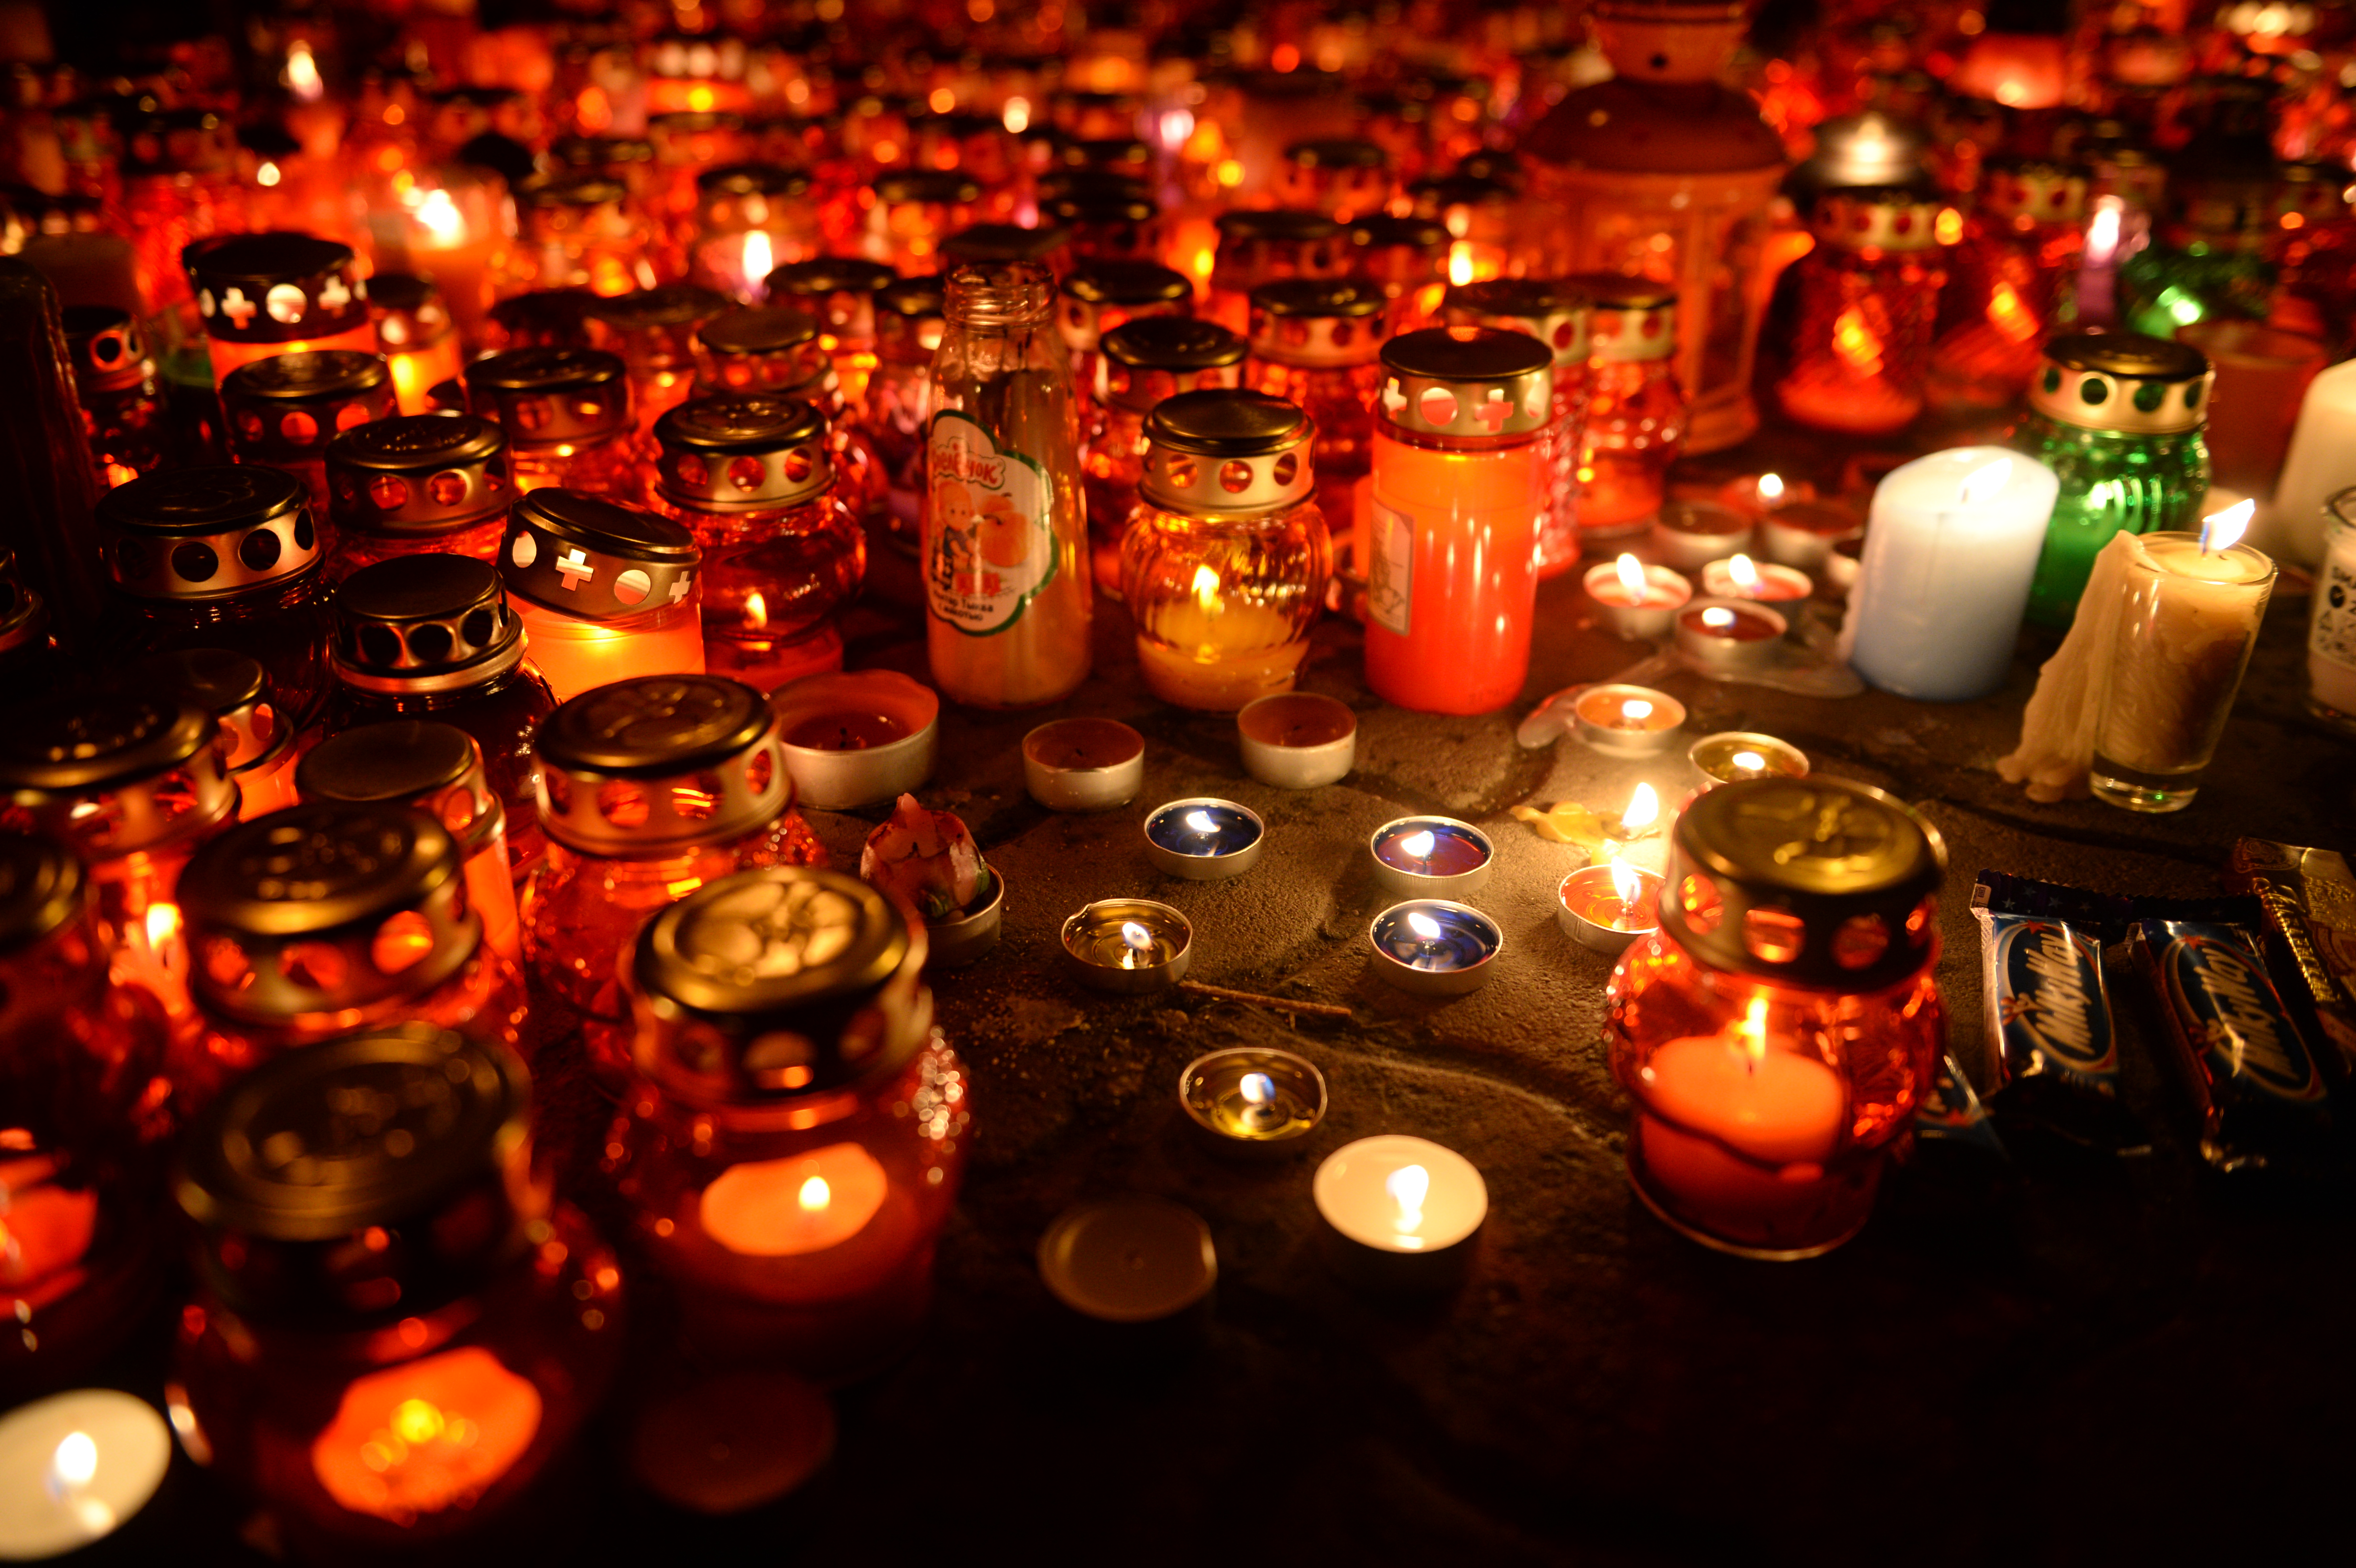 Зажжённые свечи возле ТЦ "Зимняя вишня" в Кемерово